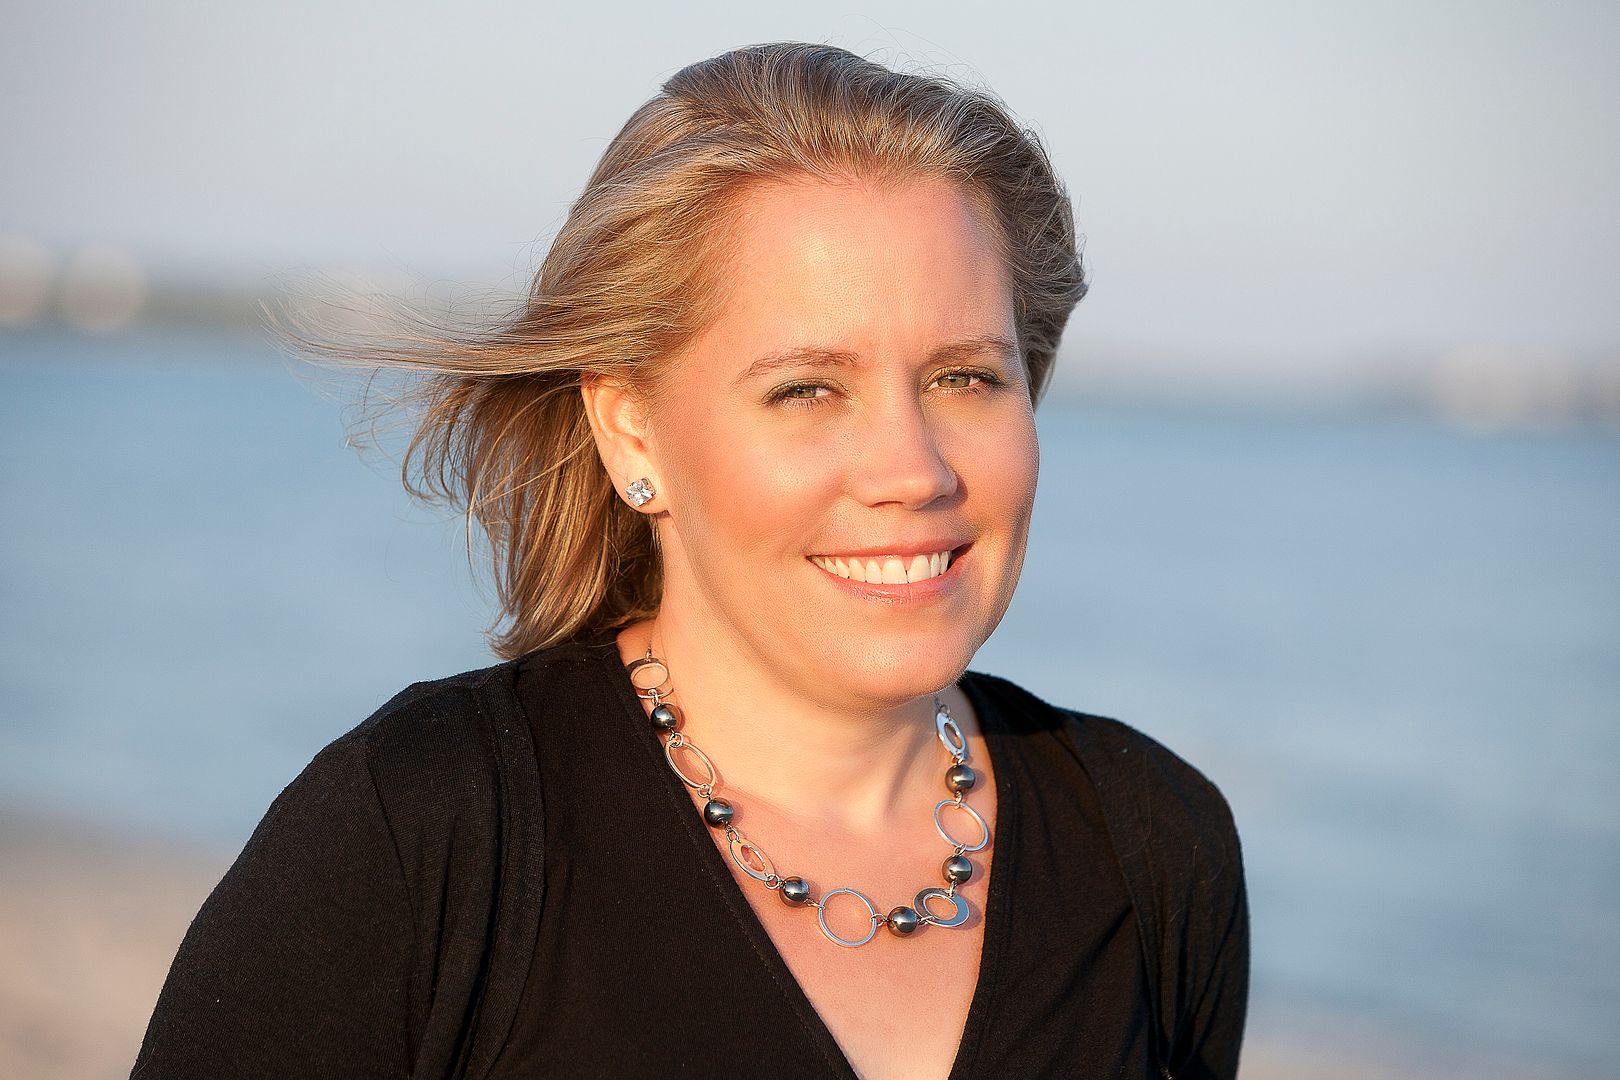 Author Trisha Leaver